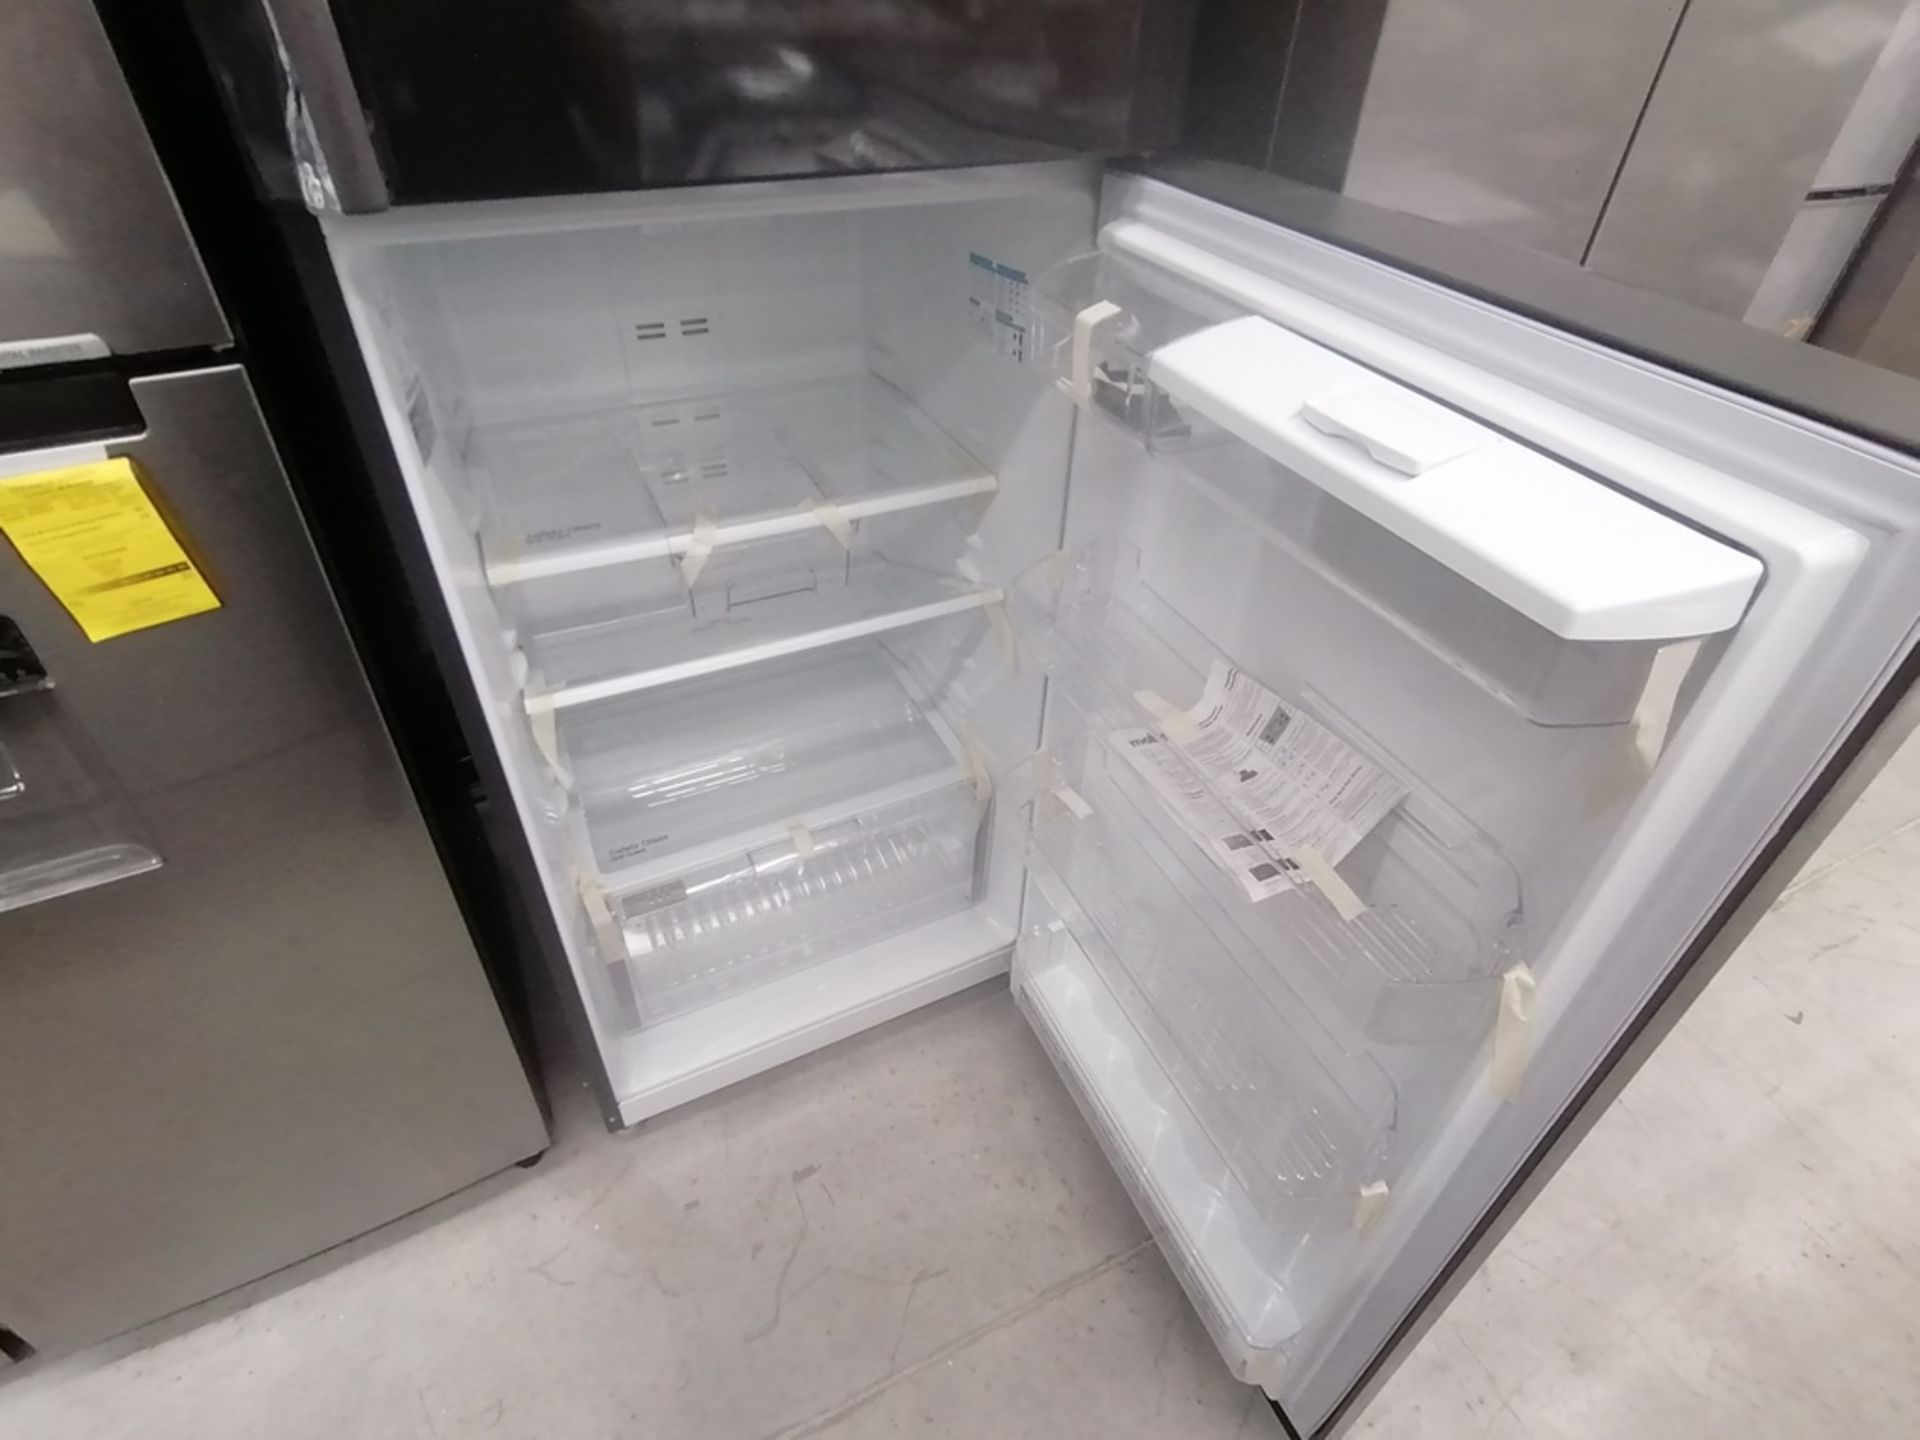 Lote de 2 refrigeradores incluye: 1 Refrigerador, Marca Samsung, Modelo RT22A401059, Serie 8BA84BBR - Image 14 of 15